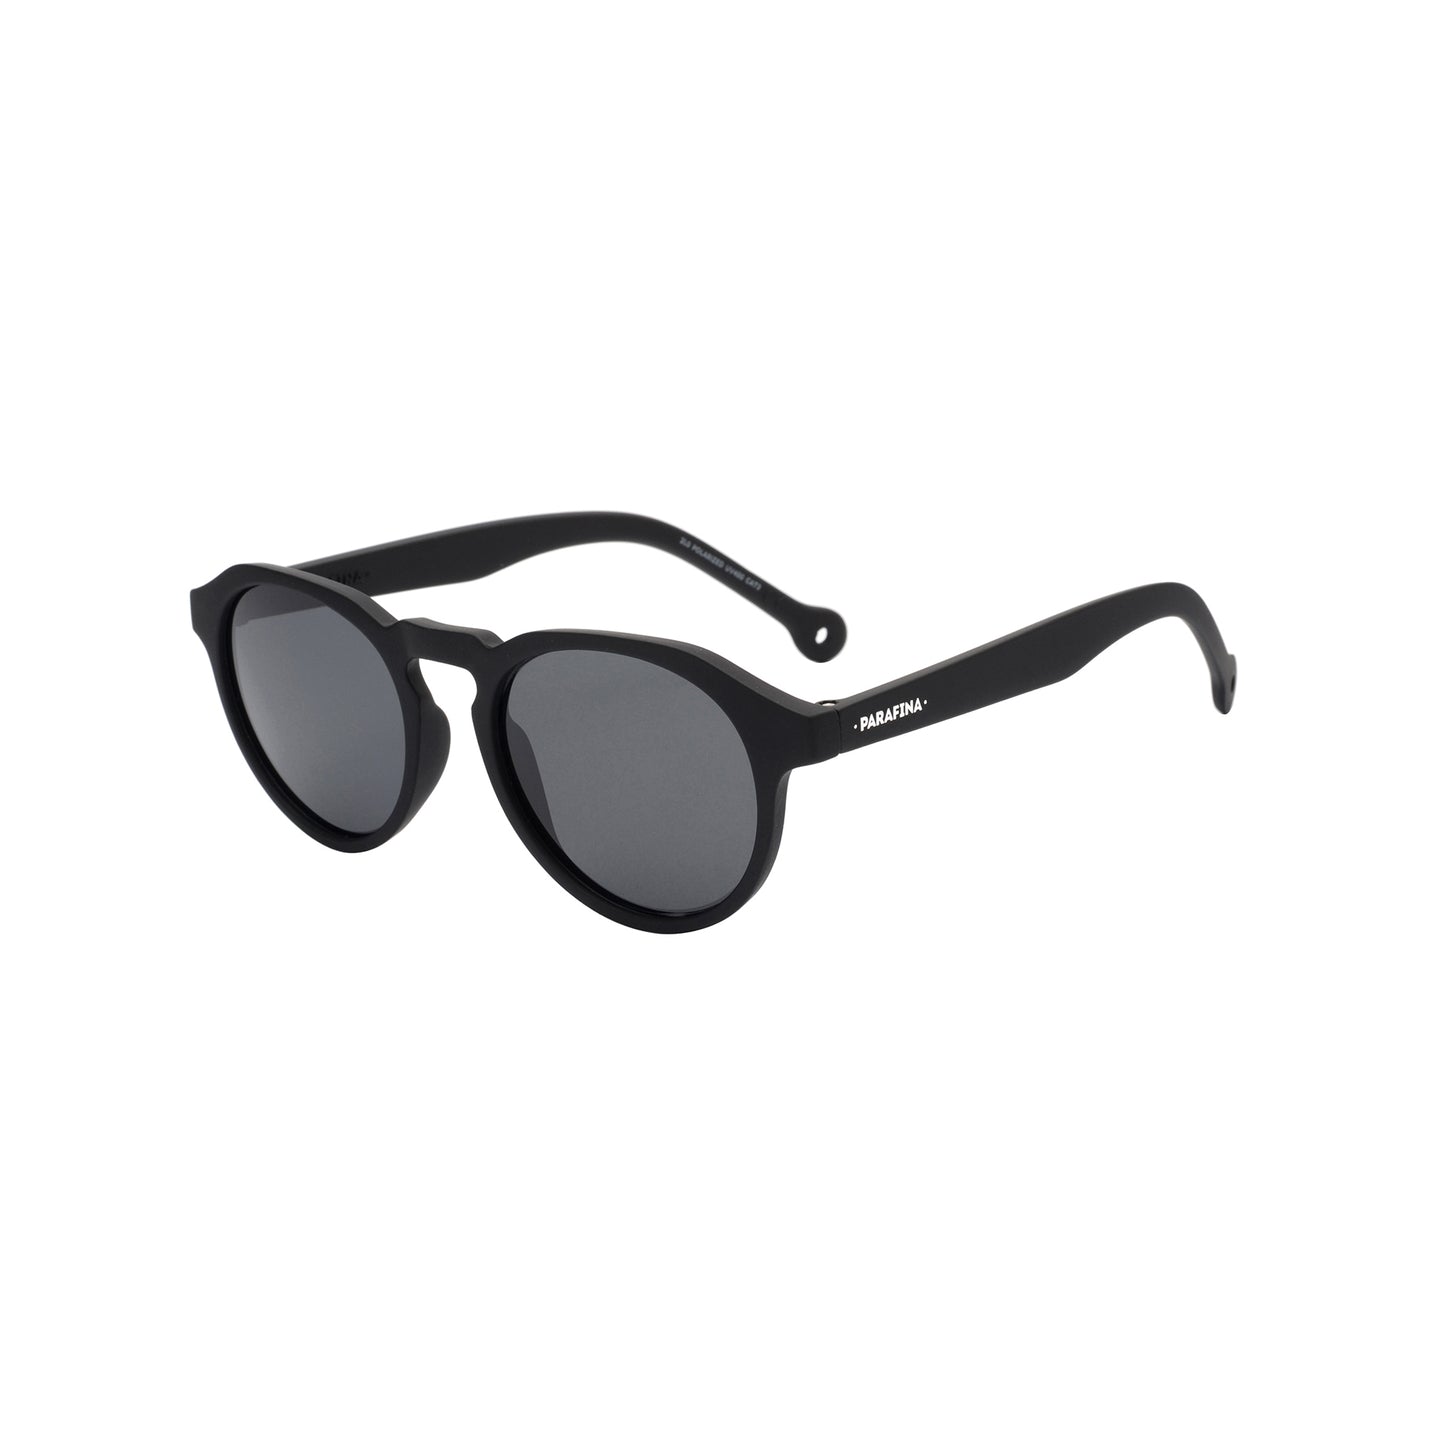 PAZO Sunglasses - Black